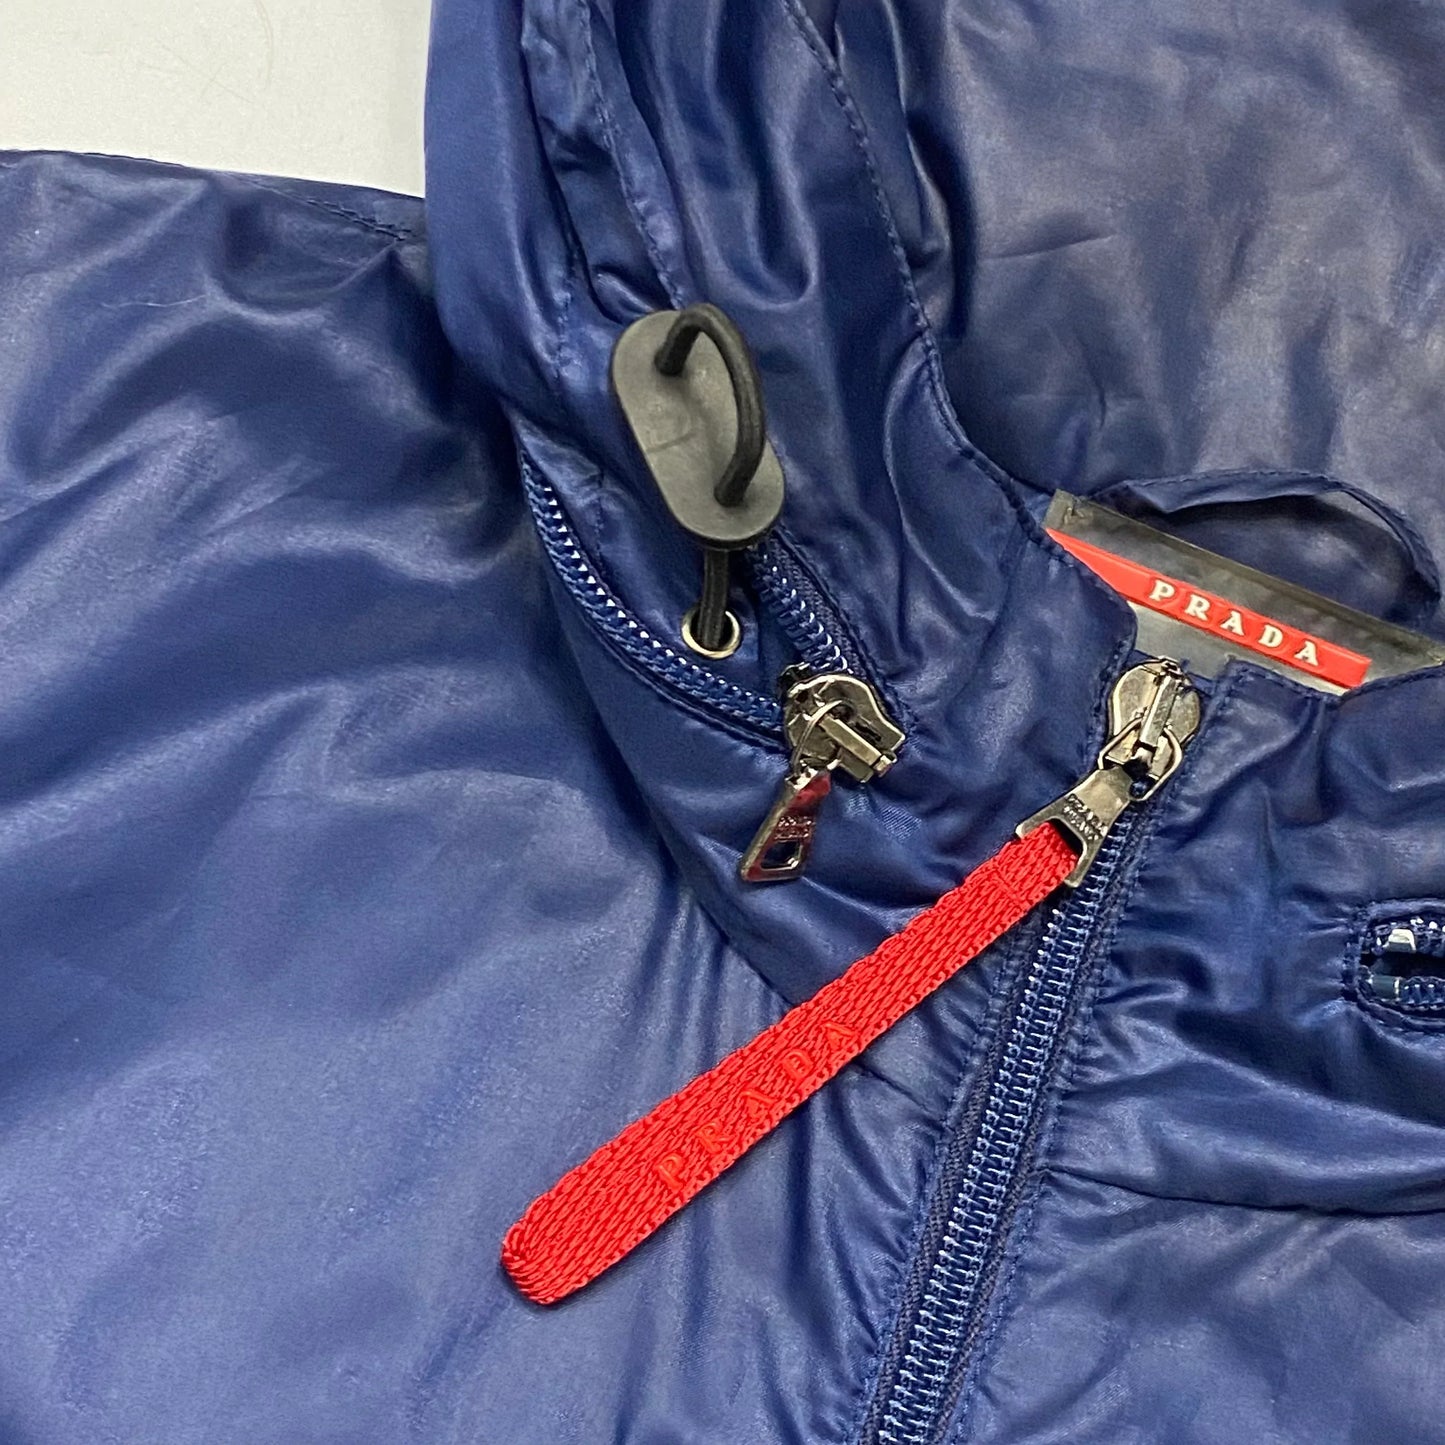 Prada Sport SS00 Convertible Nylon Reflective Jacket - L/XL